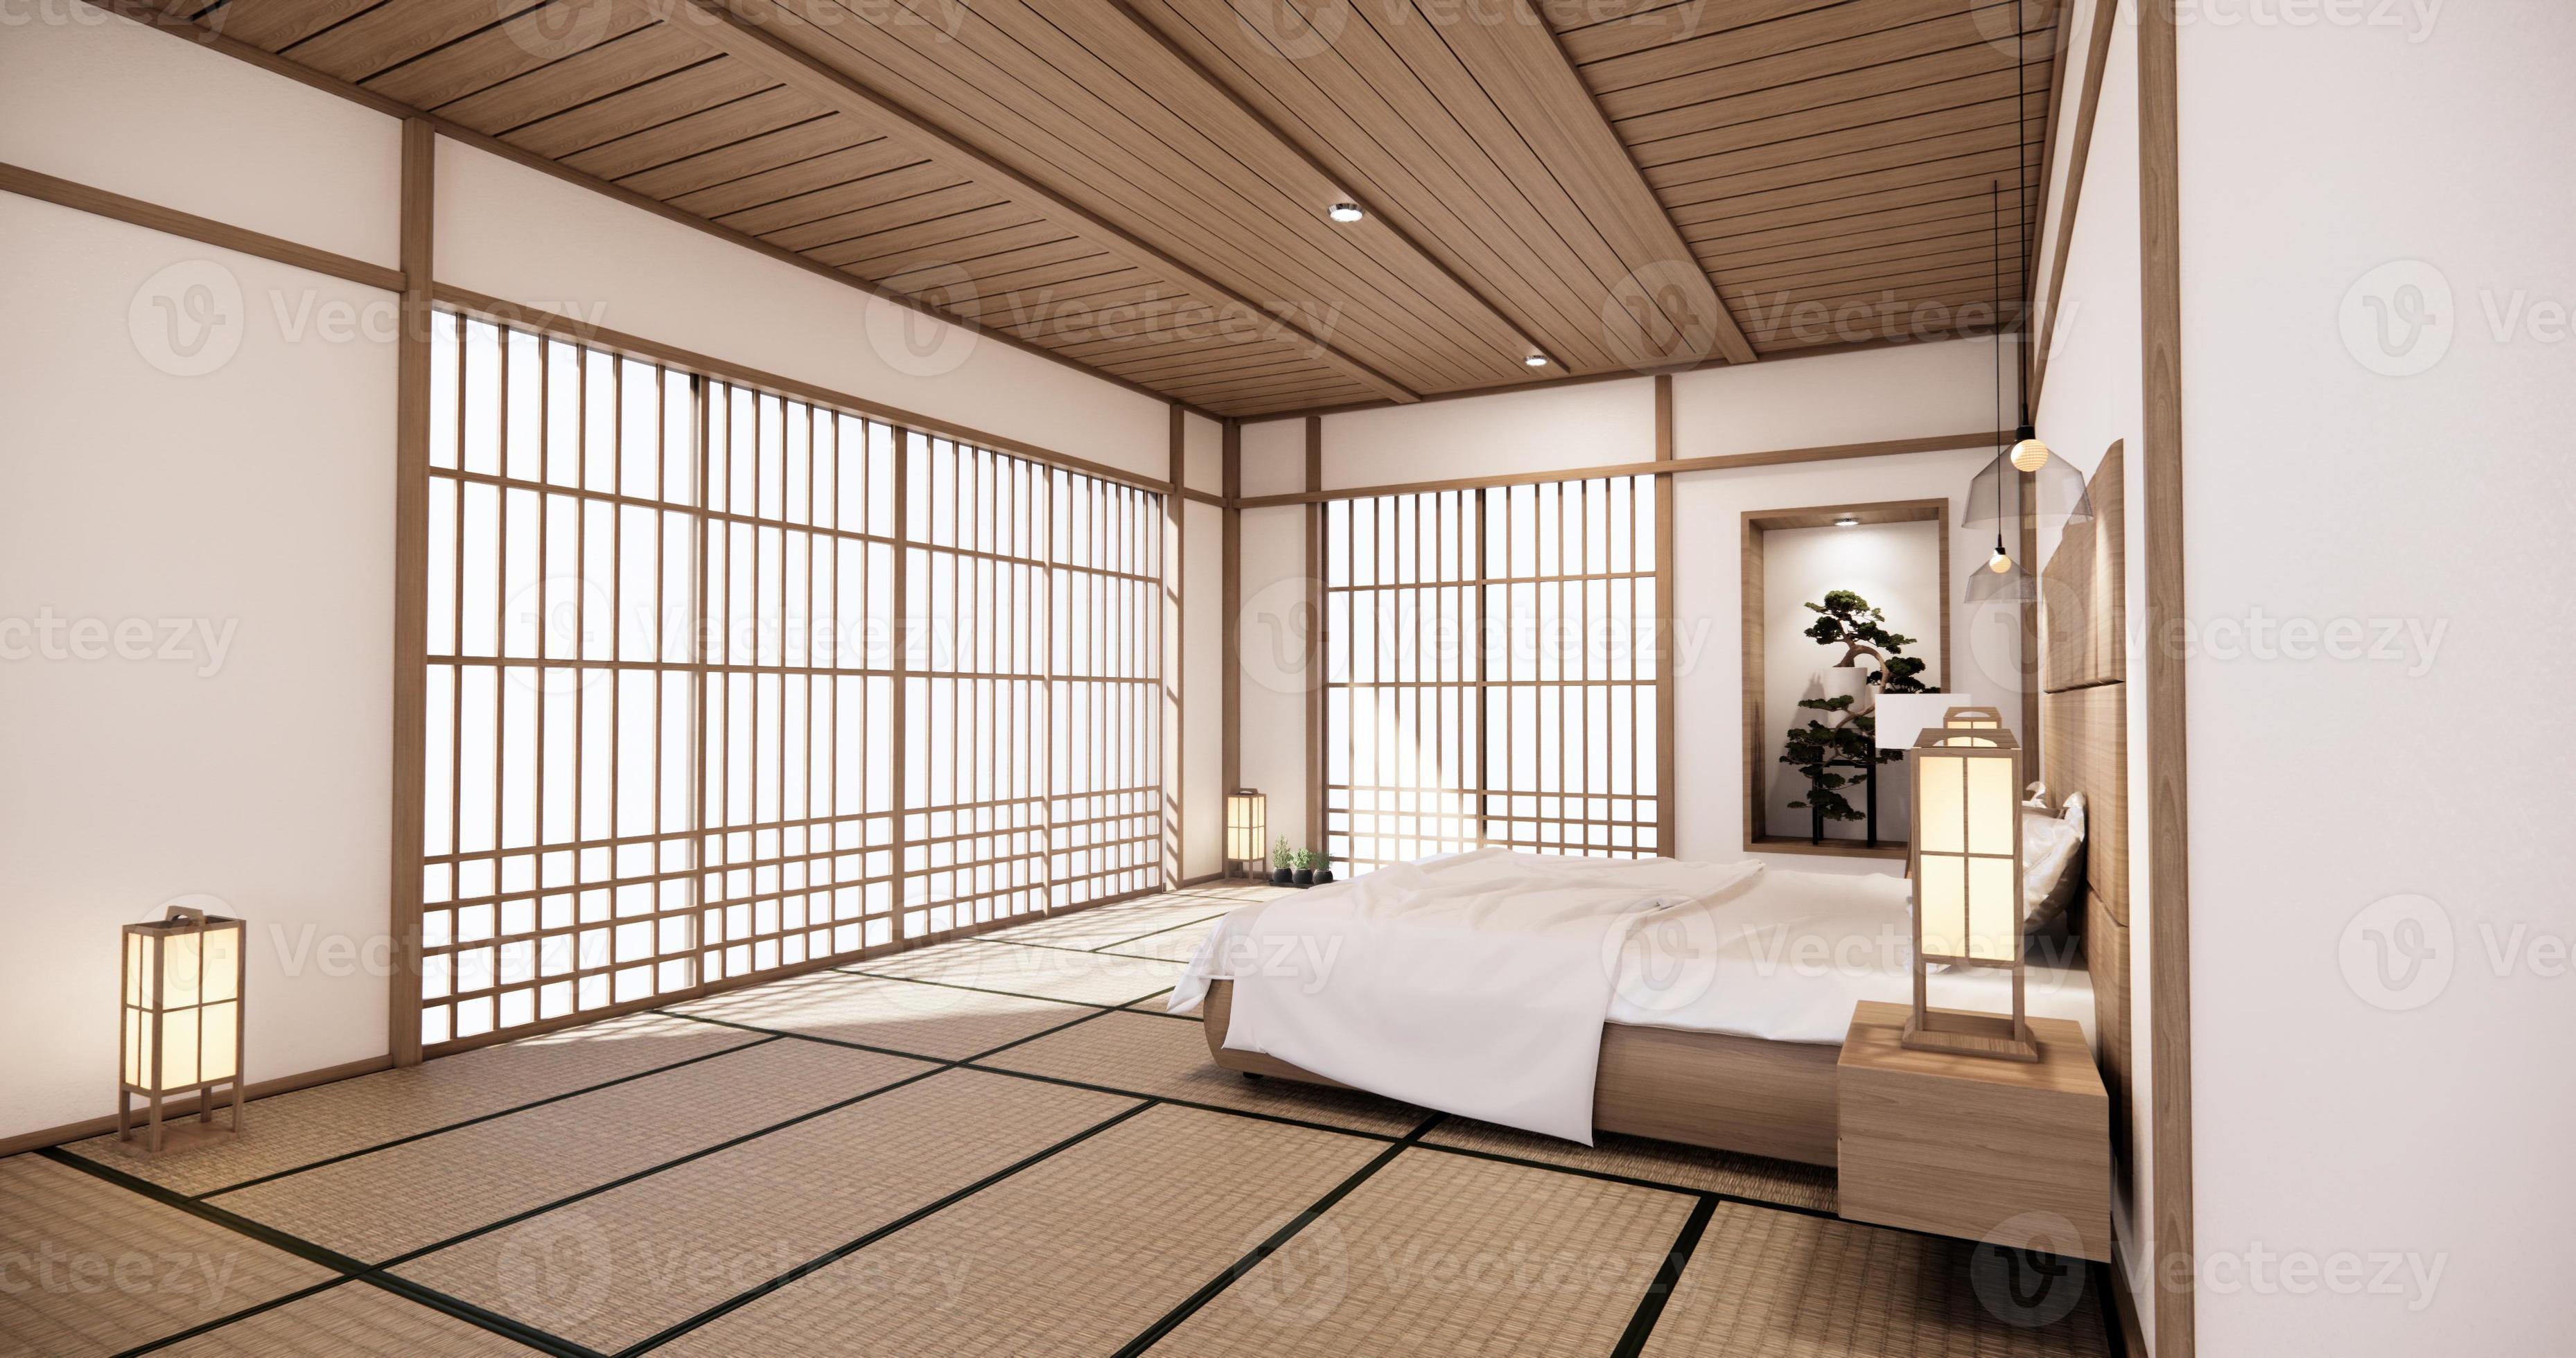 Diseño Interior De Habitación De Estilo Japonés Con Tatami Japonés Y Manta.  Ai Generativa Fotos, retratos, imágenes y fotografía de archivo libres de  derecho. Image 201837157